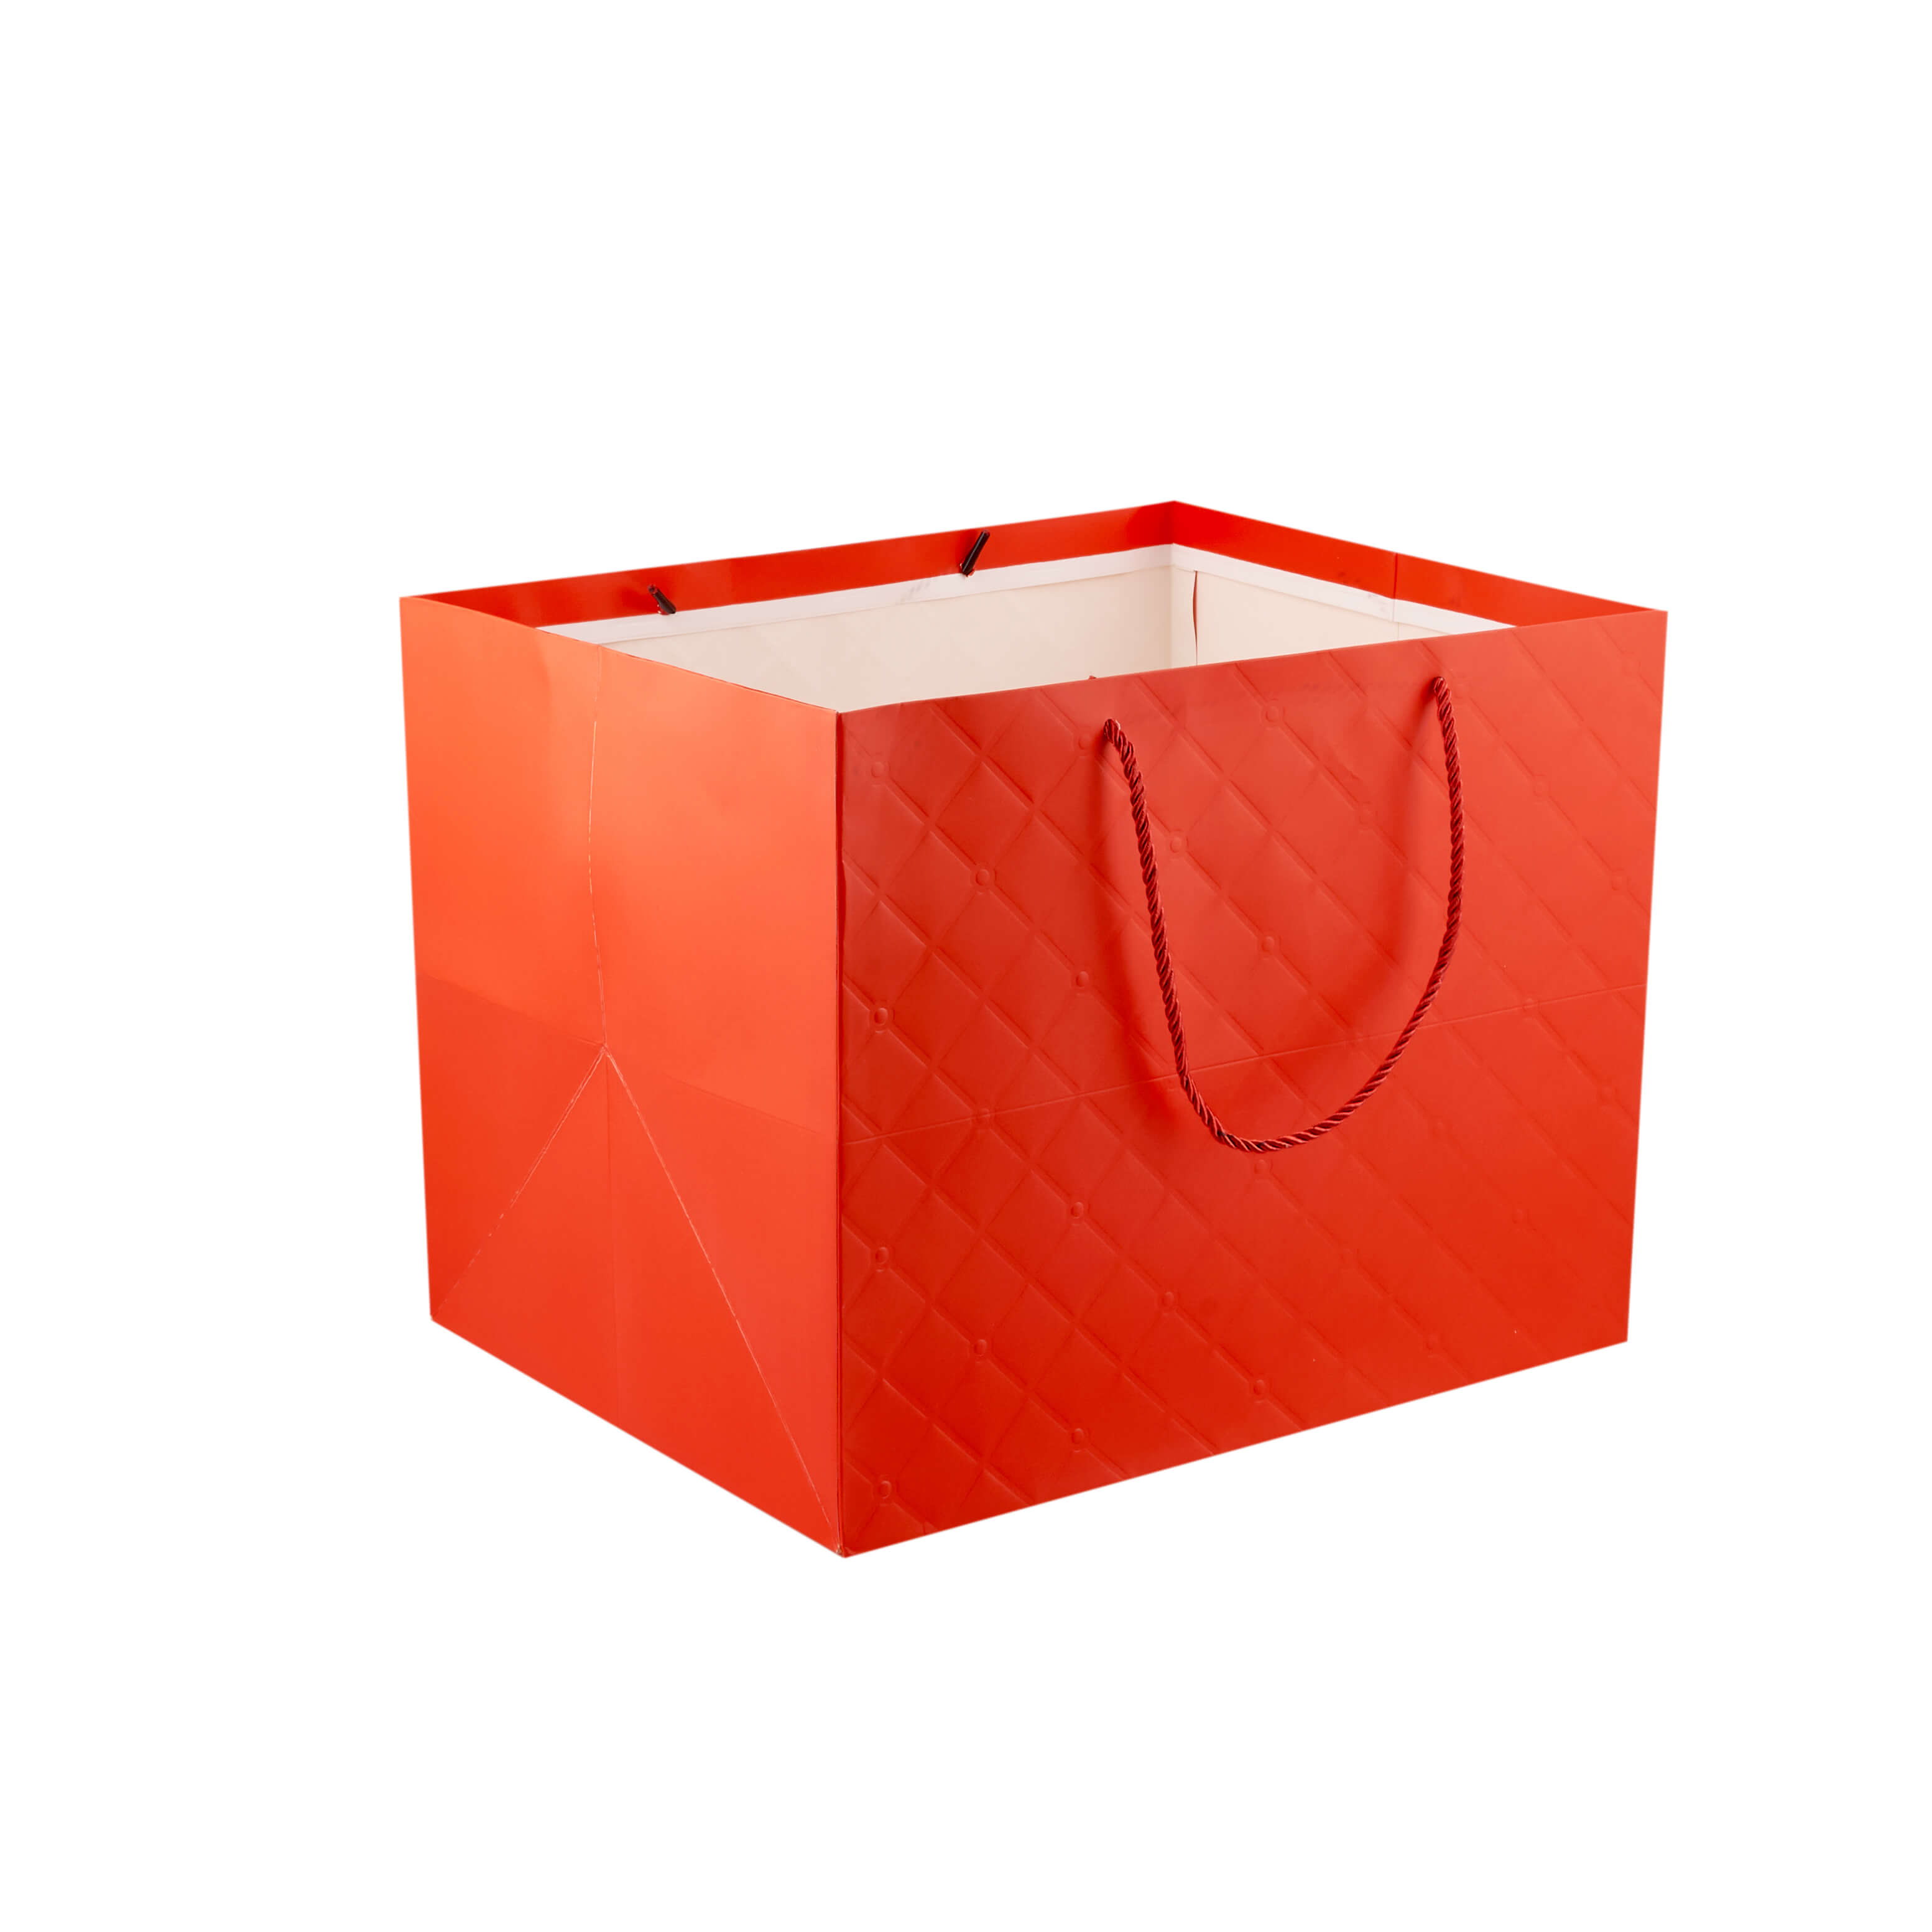 Louis Vuitton MM Empty Paper Bag Blue Handles Orange Retail Bag/Lot of 3